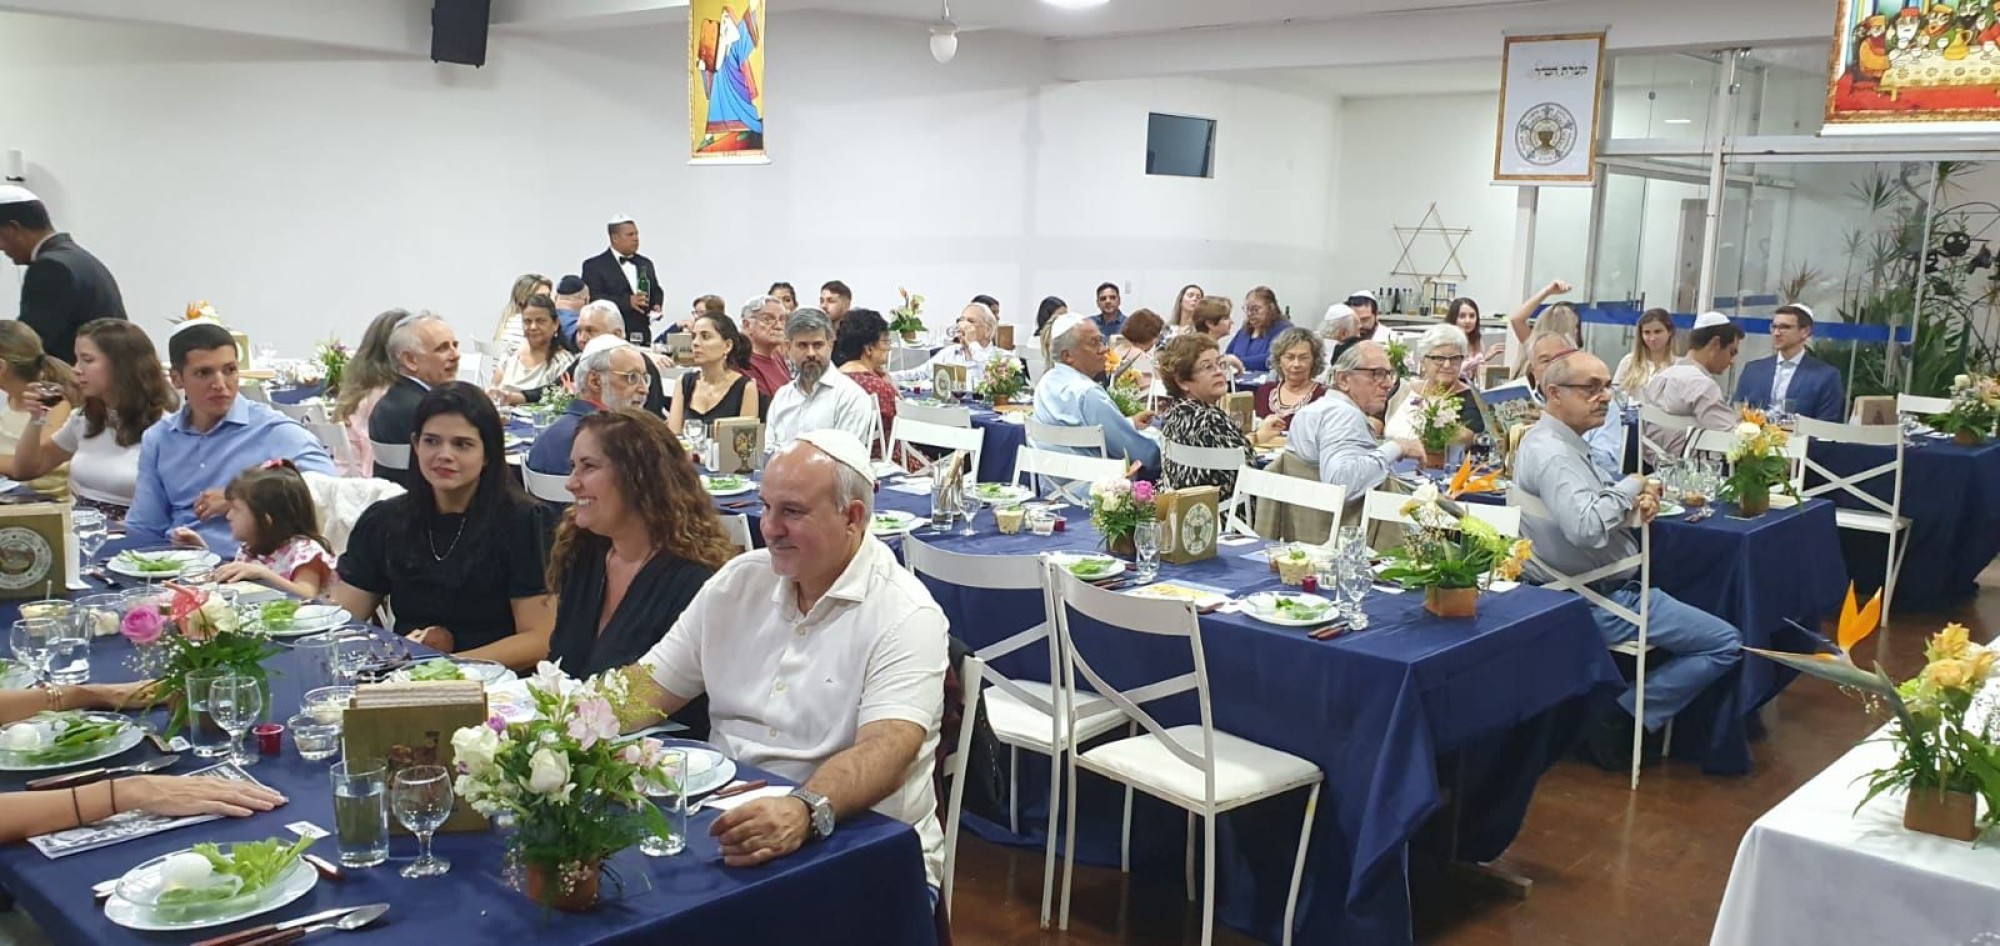 Eventos de Pessach lotam instituições judaicas do País - Fundada em 1948, a CONIB – Confederação Israelita do Brasil é o órgão de representação e coordenação política da comunidade judaica brasileira. 